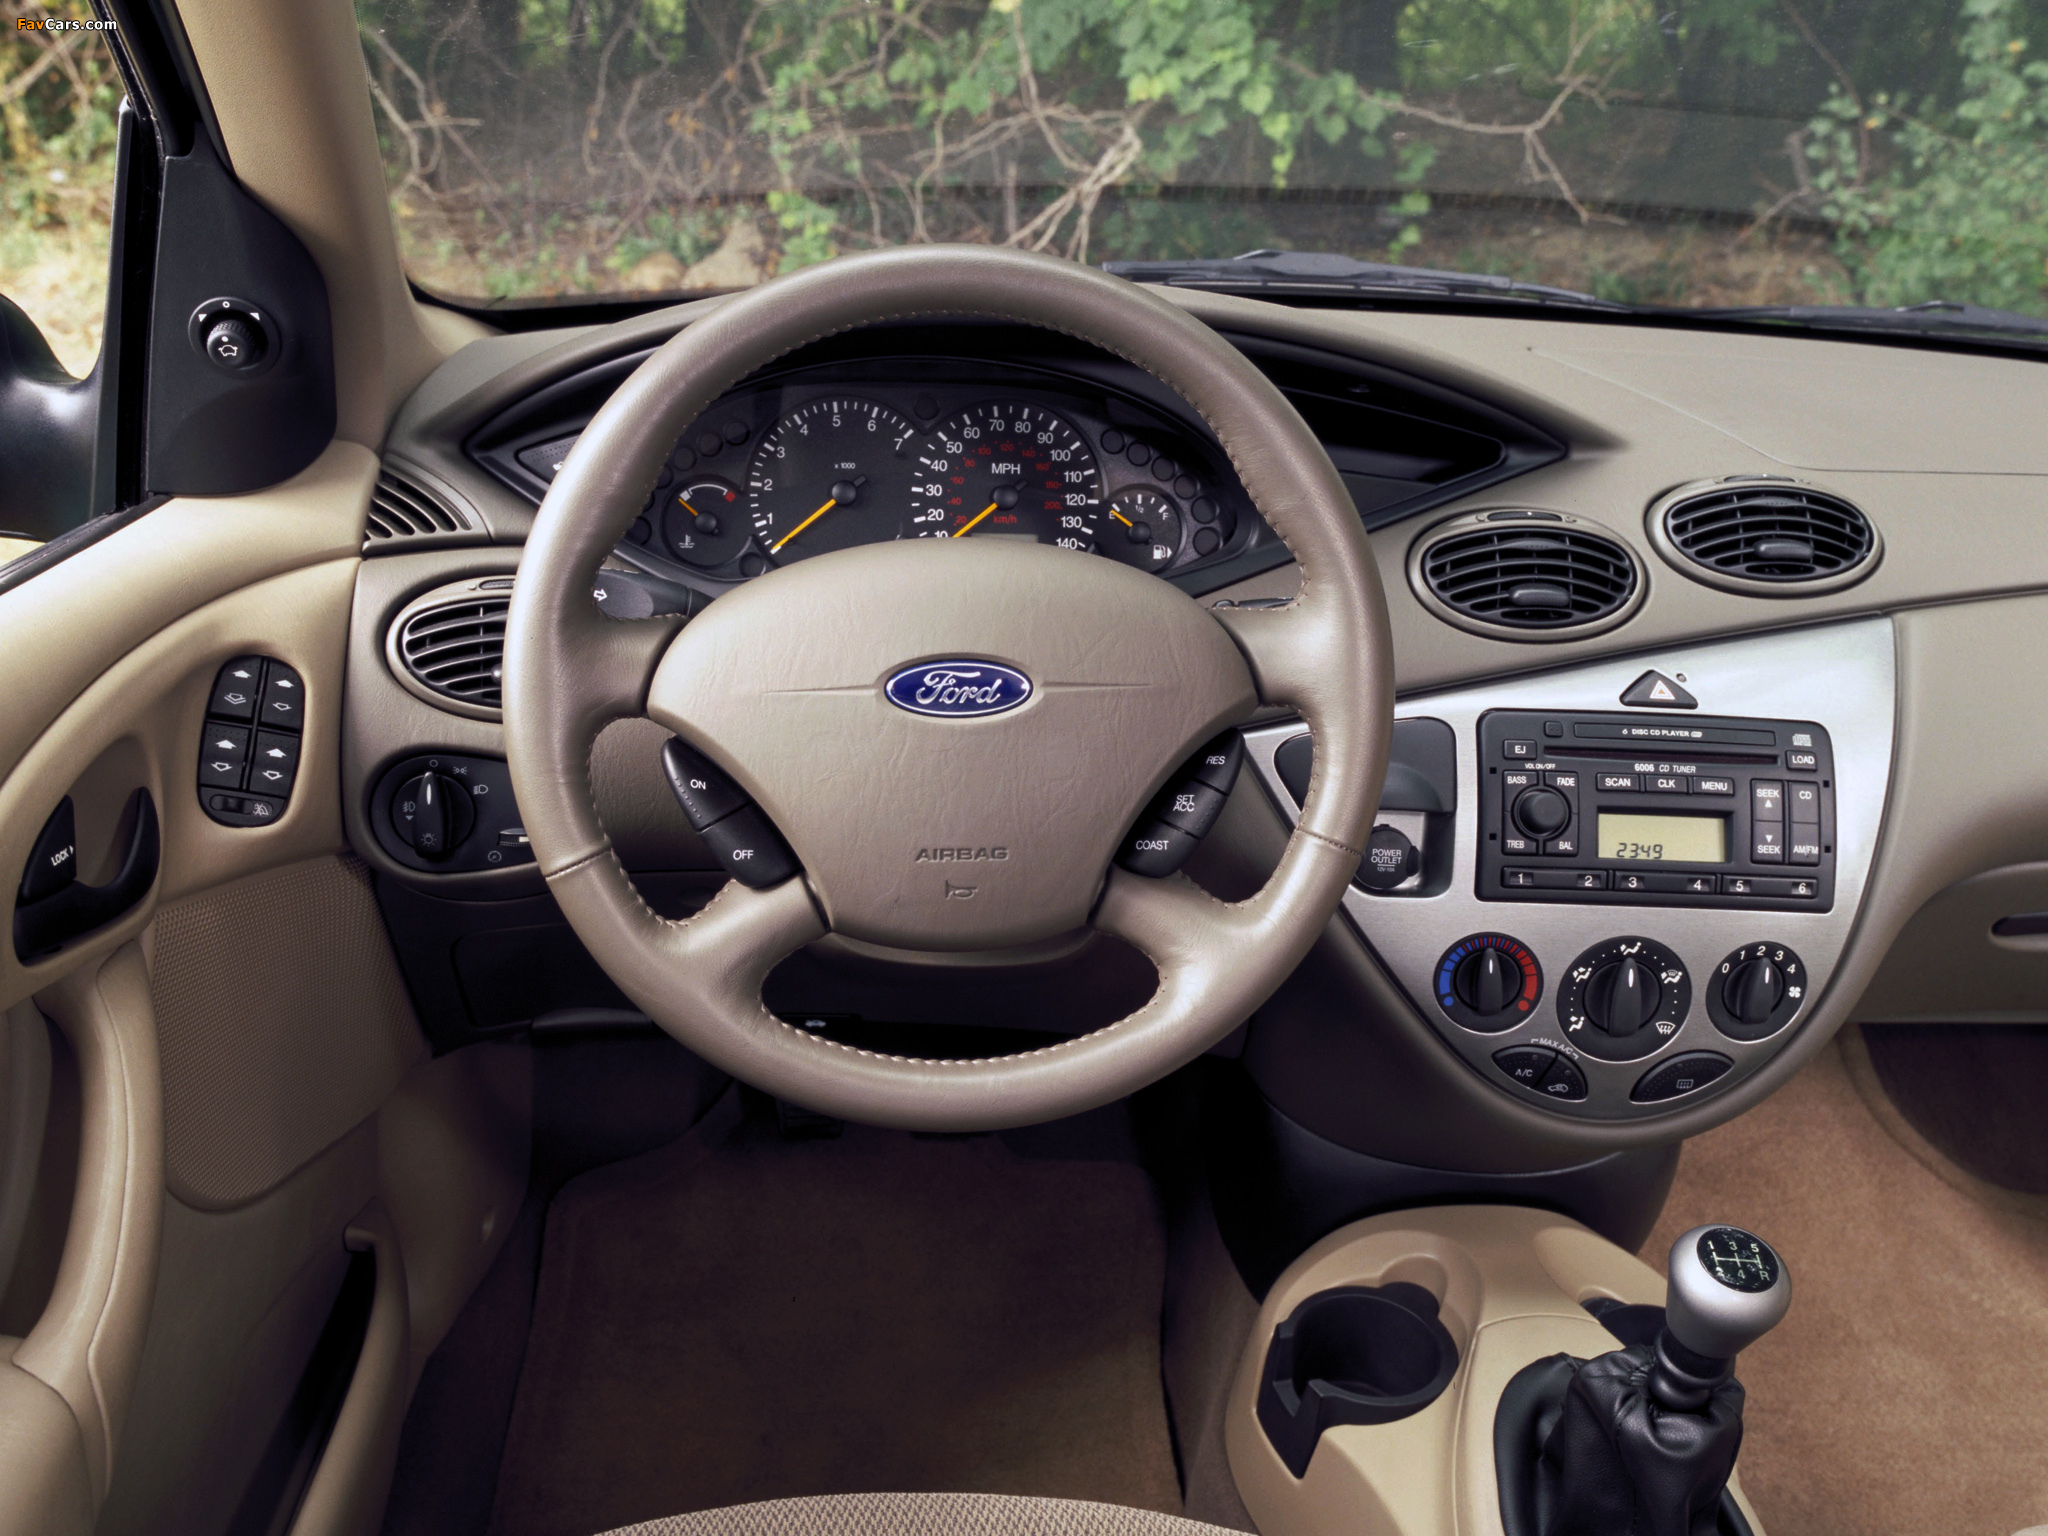 2017 Ford® Focus Sedan & Hatchback | Designed to Inspire ...